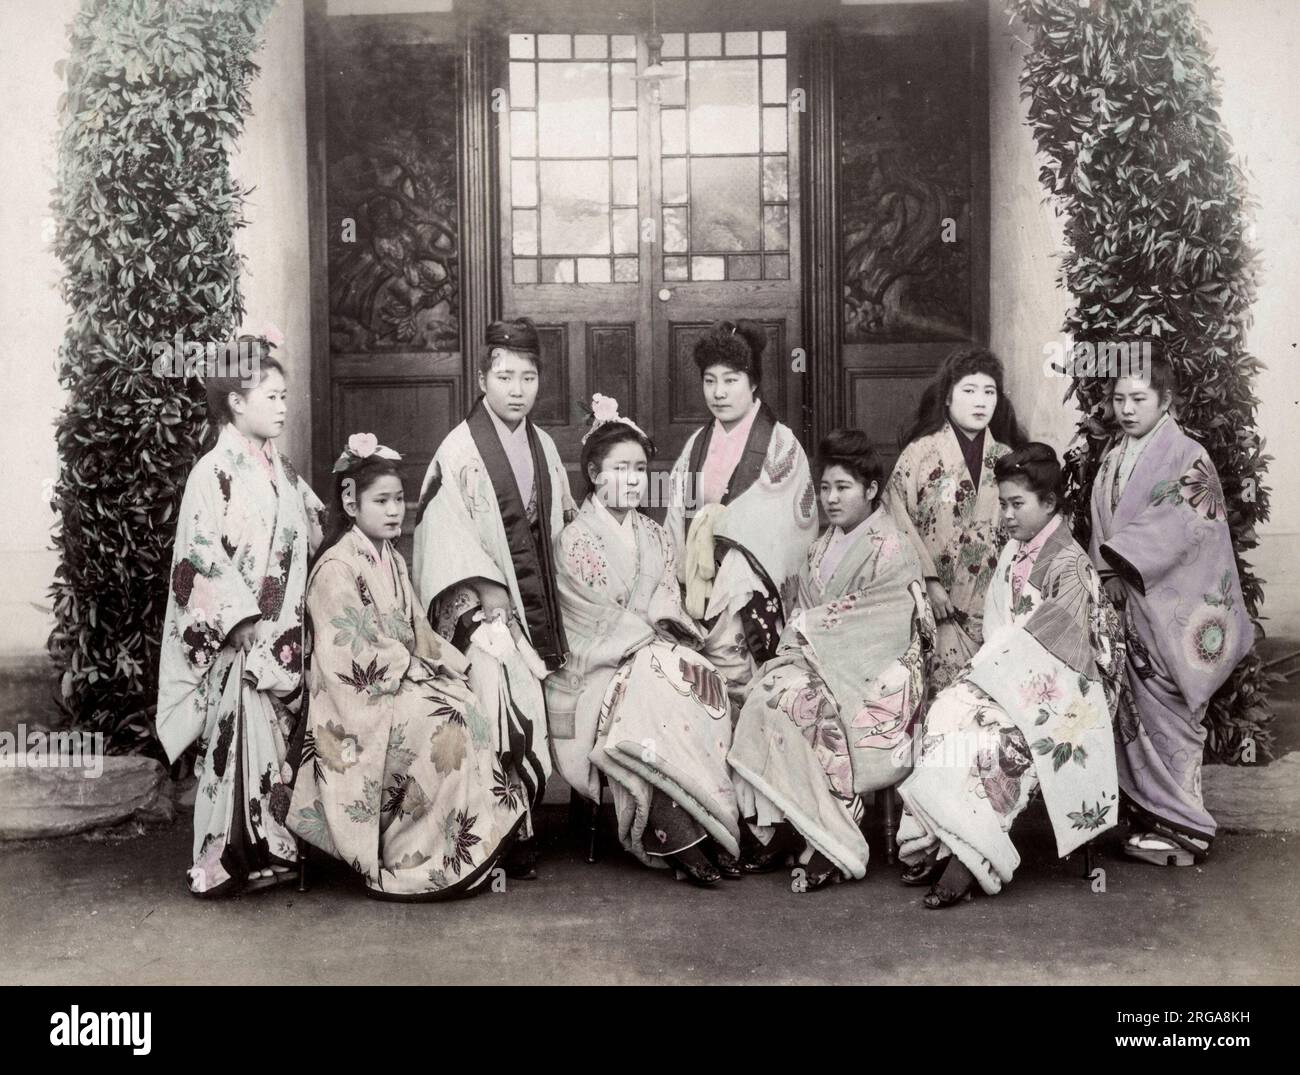 Eine Gruppe von Prostituierten in verzierten Kimonos, Japan. Vintage 19. Jahrhundert Foto. Stockfoto